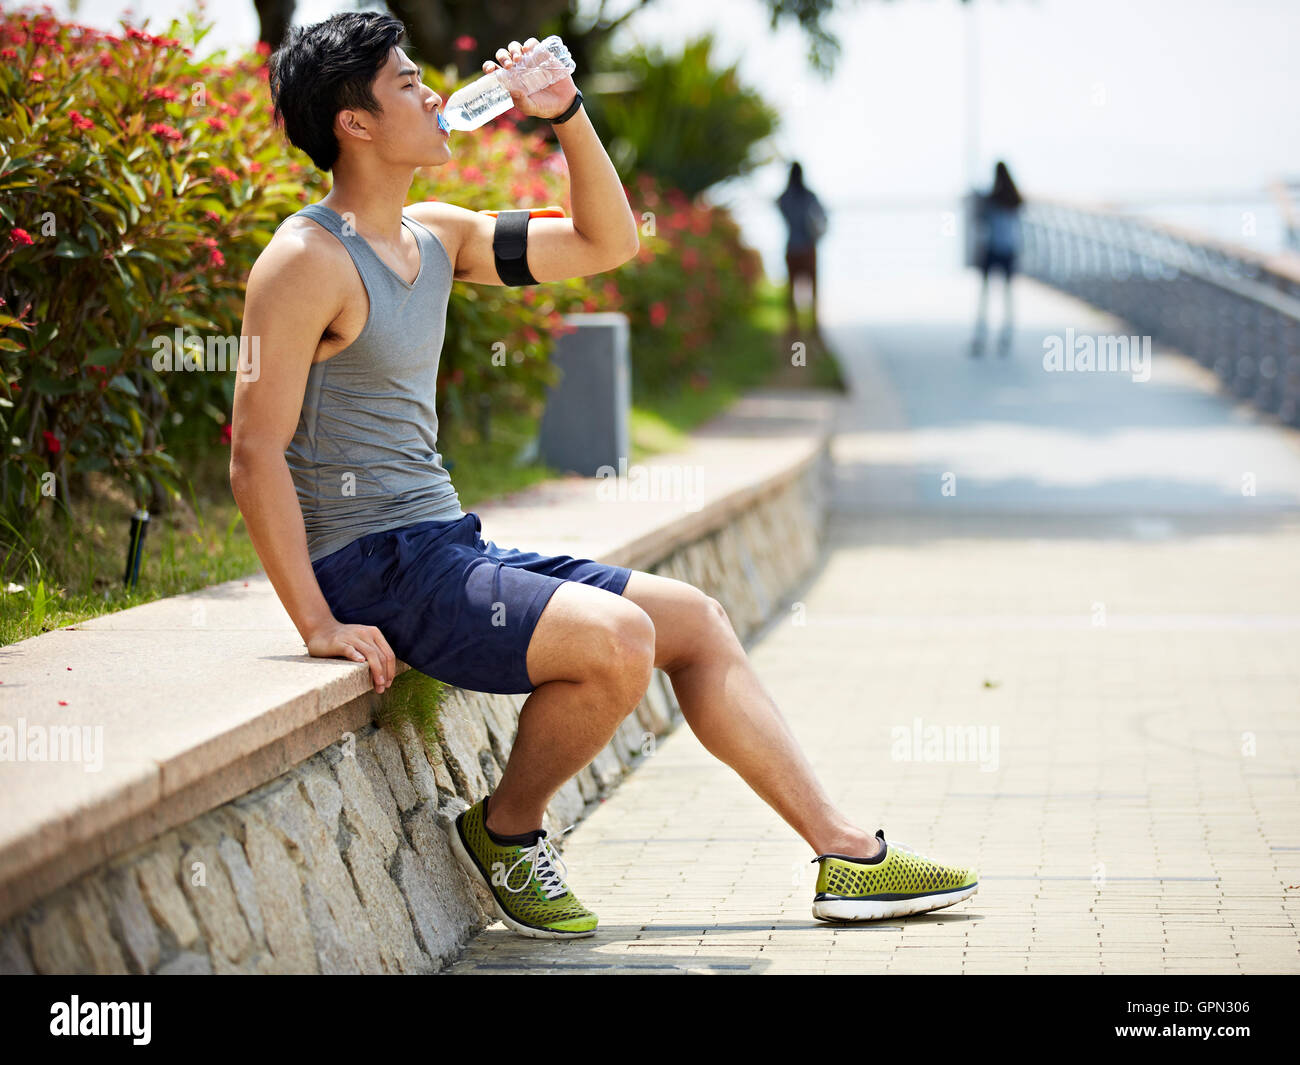 Giovane bello pareggiatore asiatici prendendo una pausa e acqua potabile da una bottiglia, vista laterale Foto Stock